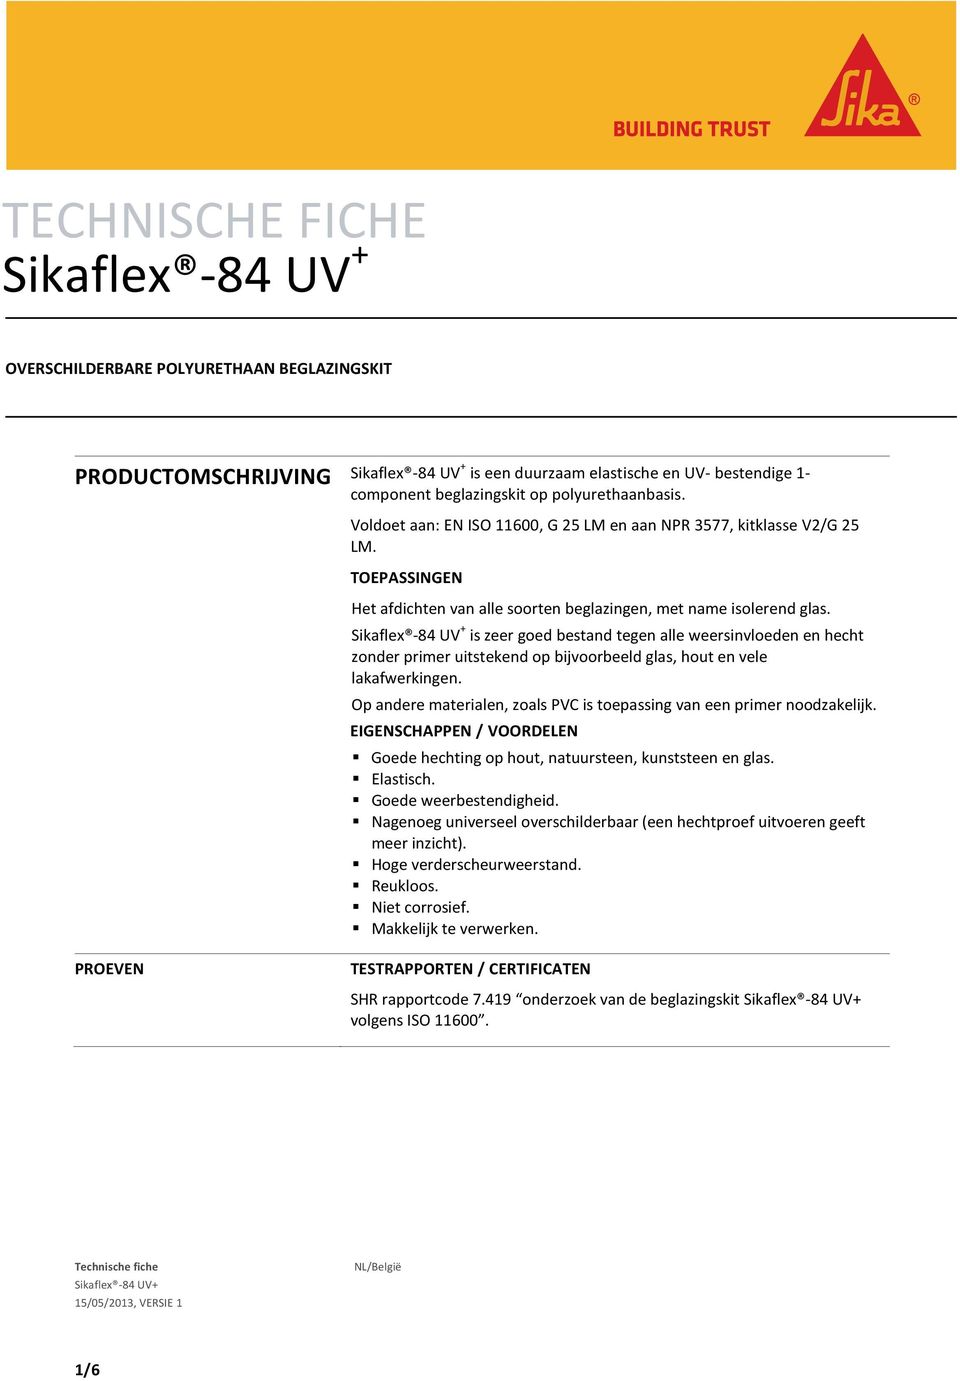 Sikaflex -84 UV + is zeer goed bestand tegen alle weersinvloeden en hecht zonder primer uitstekend op bijvoorbeeld glas, hout en vele lakafwerkingen.